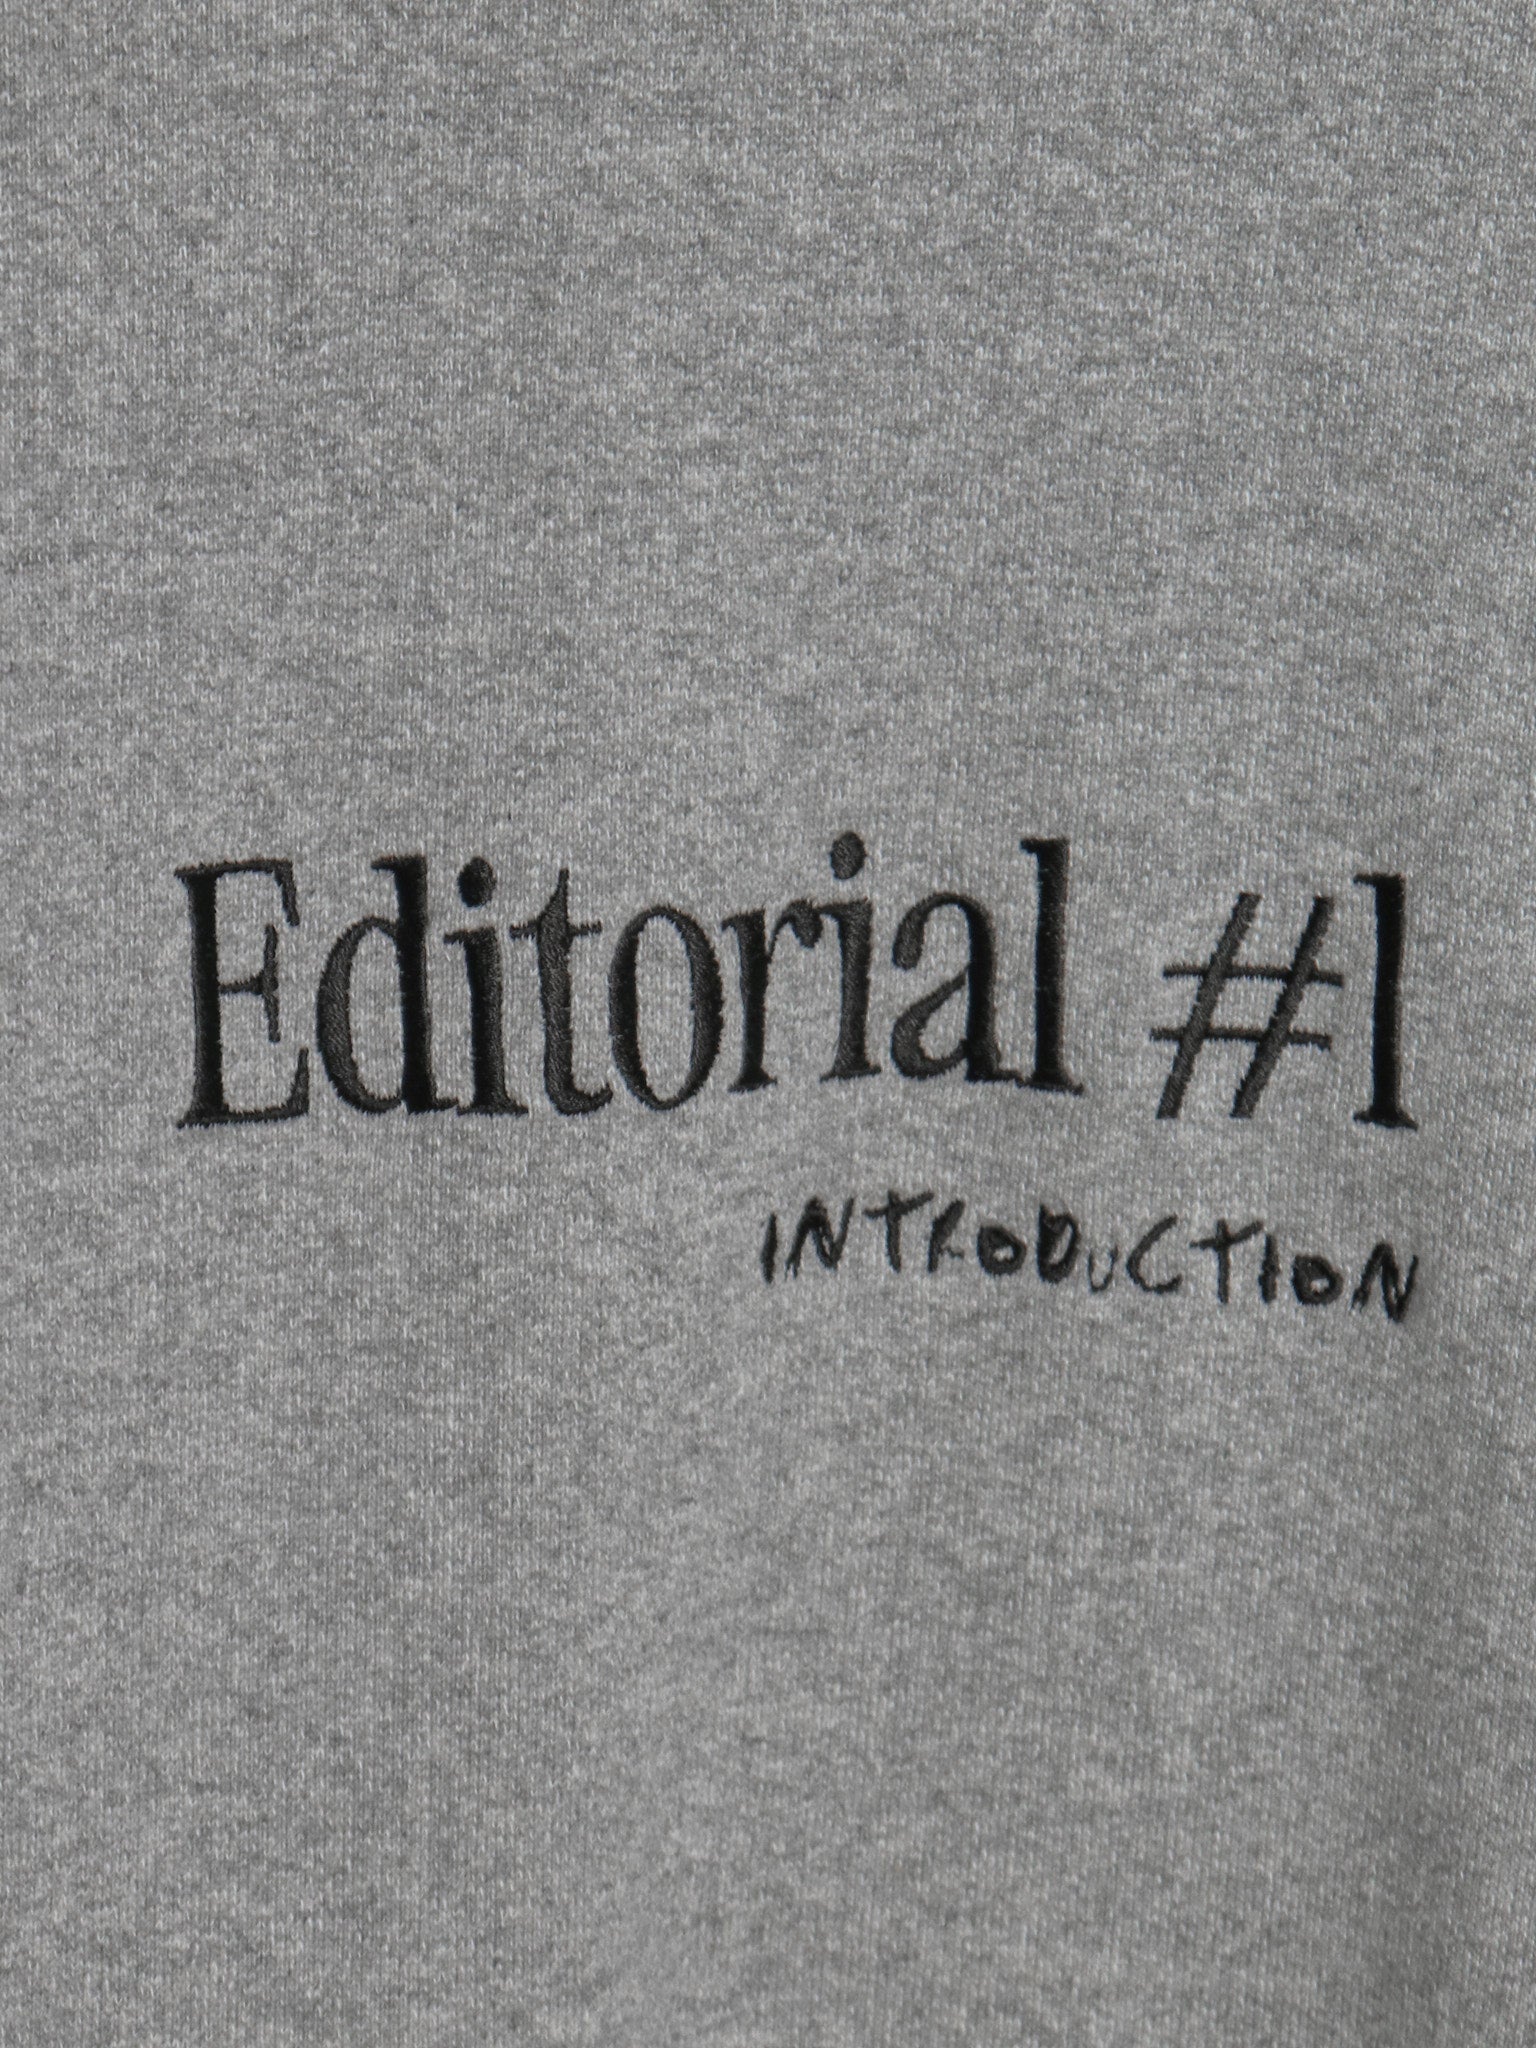 Rent editorial sweatshirt